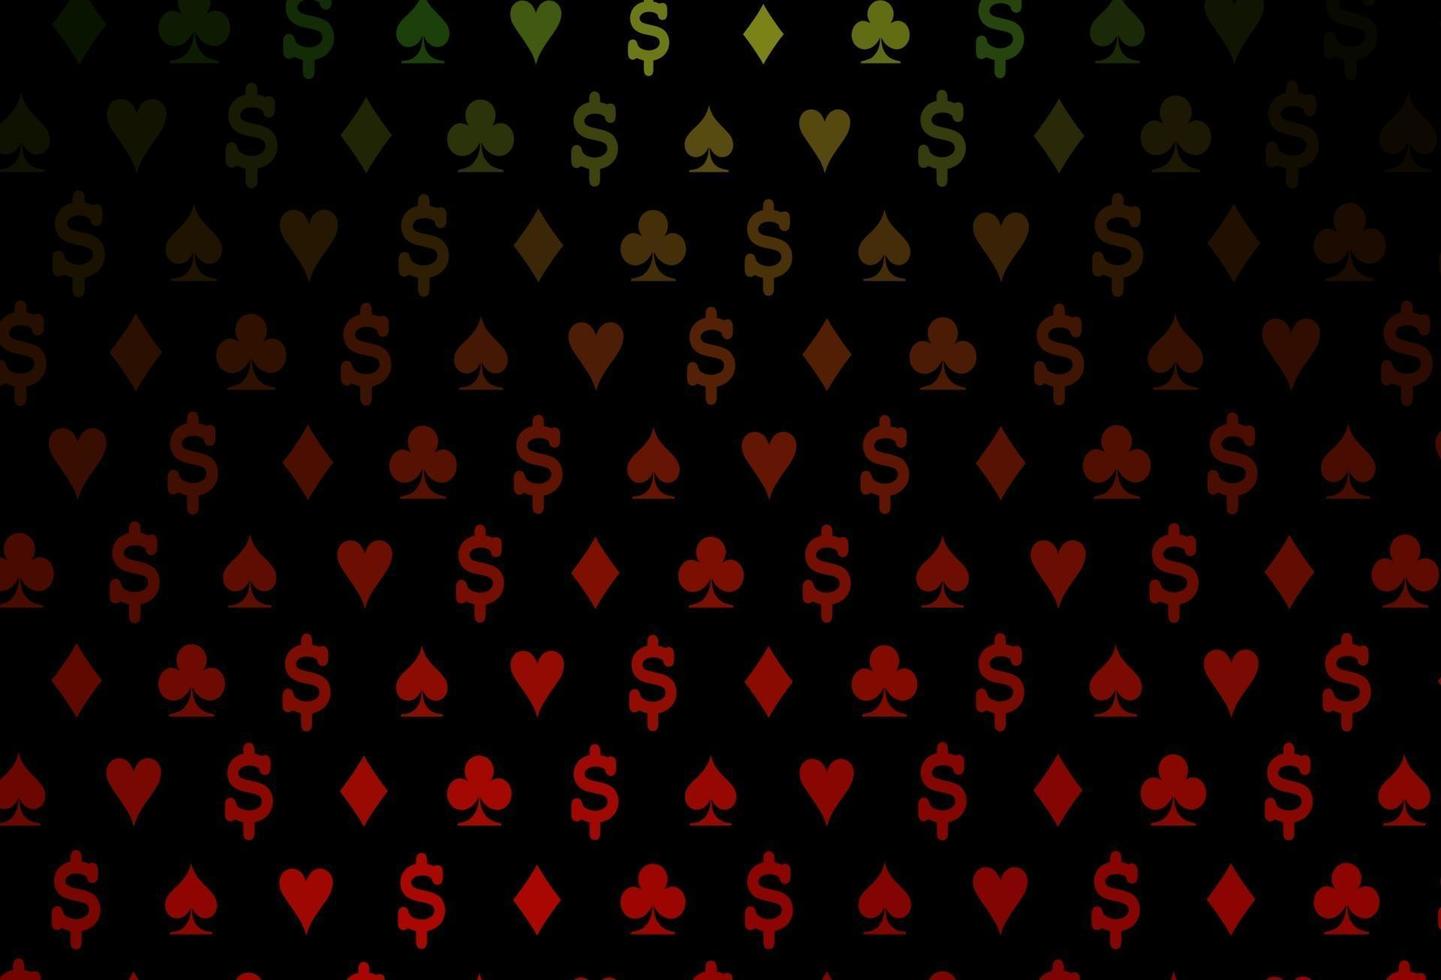 modelo de vetor verde e vermelho escuro com símbolos de pôquer.